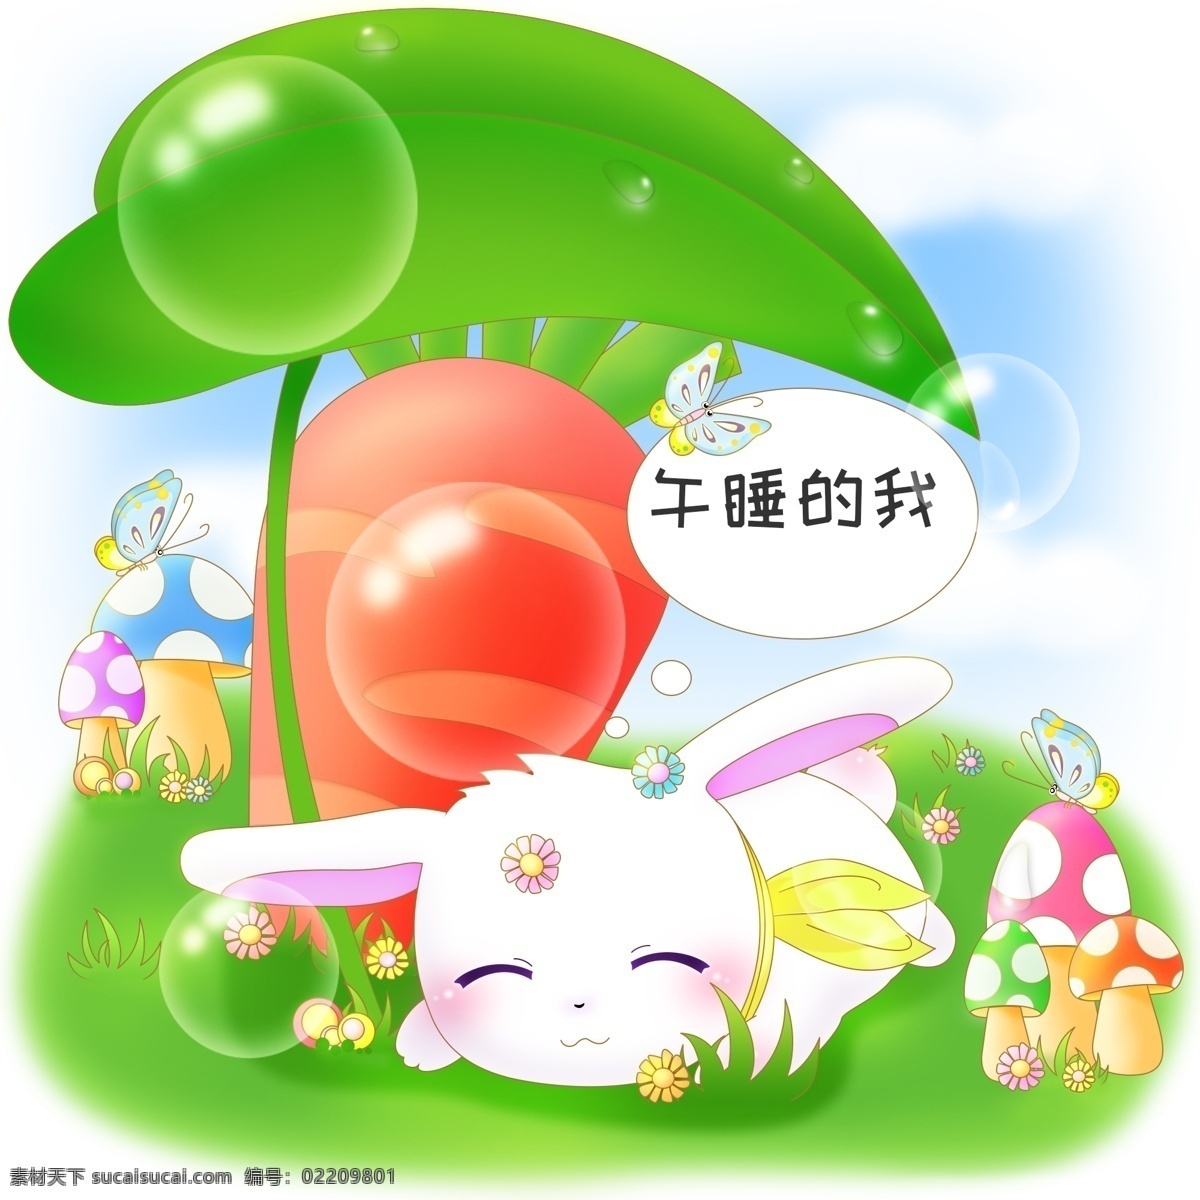 原创 商用 小 清新 萌 系 卡通 兔子 插 配 图 叶子 蓝天 草地 蝴蝶 免抠 午睡的兔子 泡泡 对话气泡 蘑菇 花 萝卜